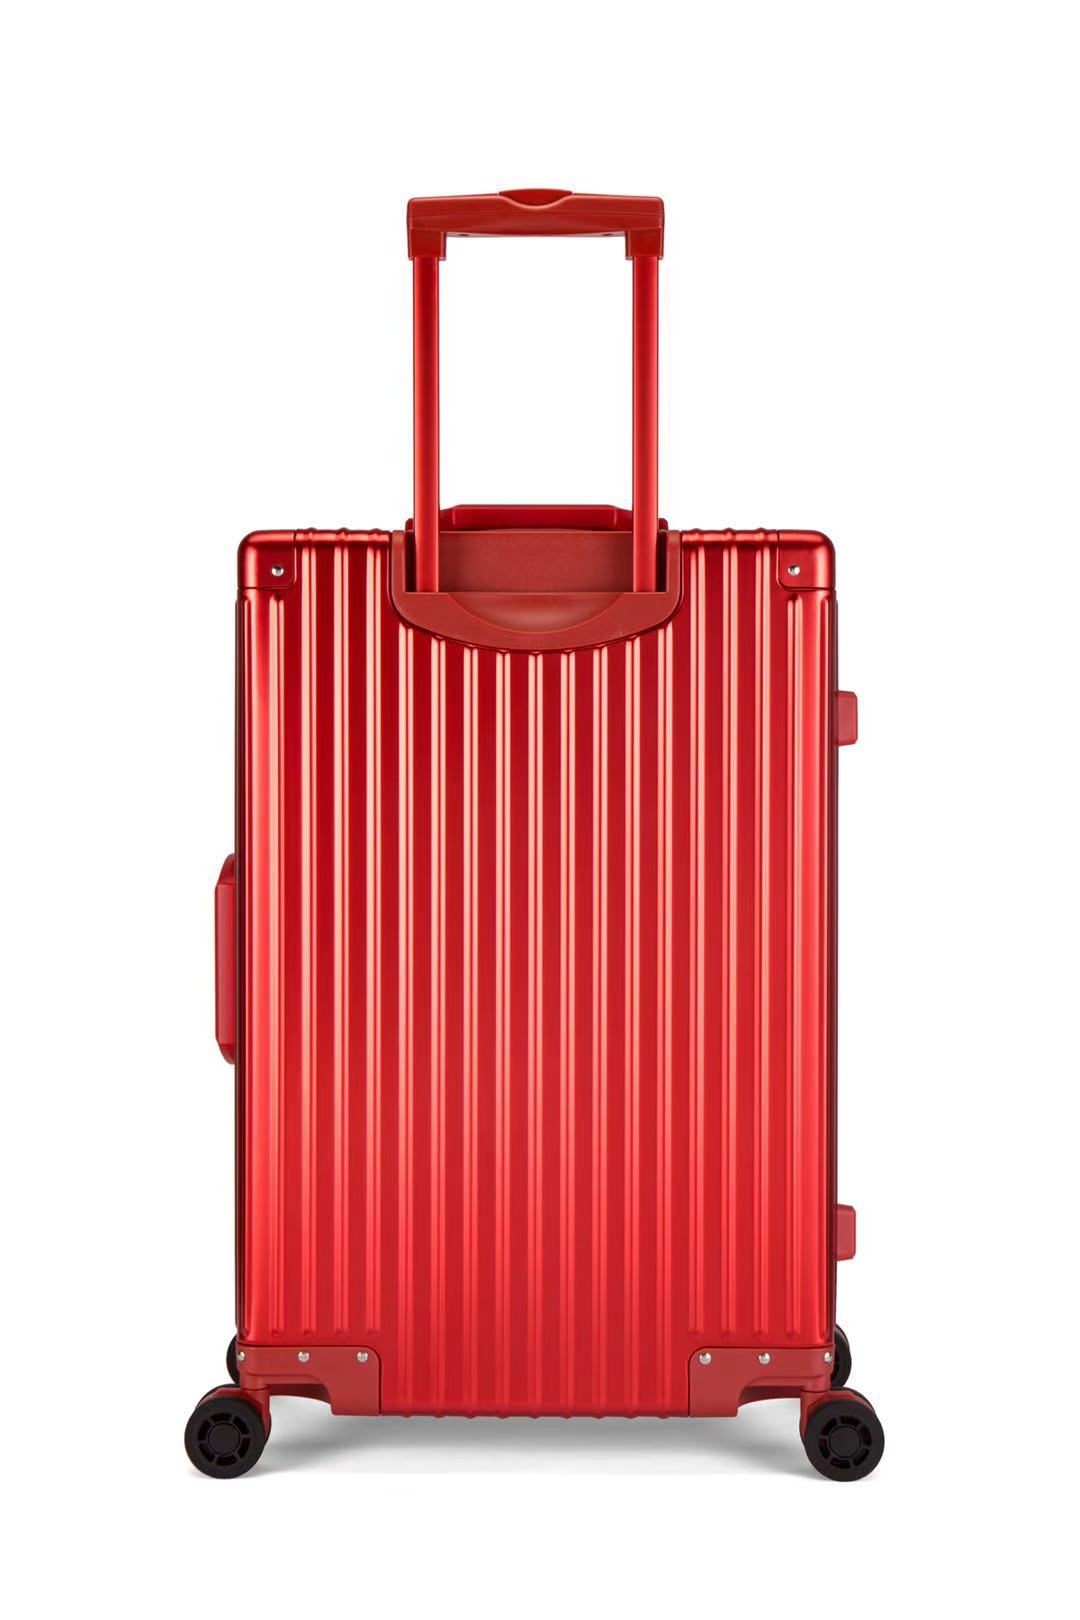 喜来登SHX-2009R潮流时尚铝镁合金拉杆箱红色20寸红色(个)